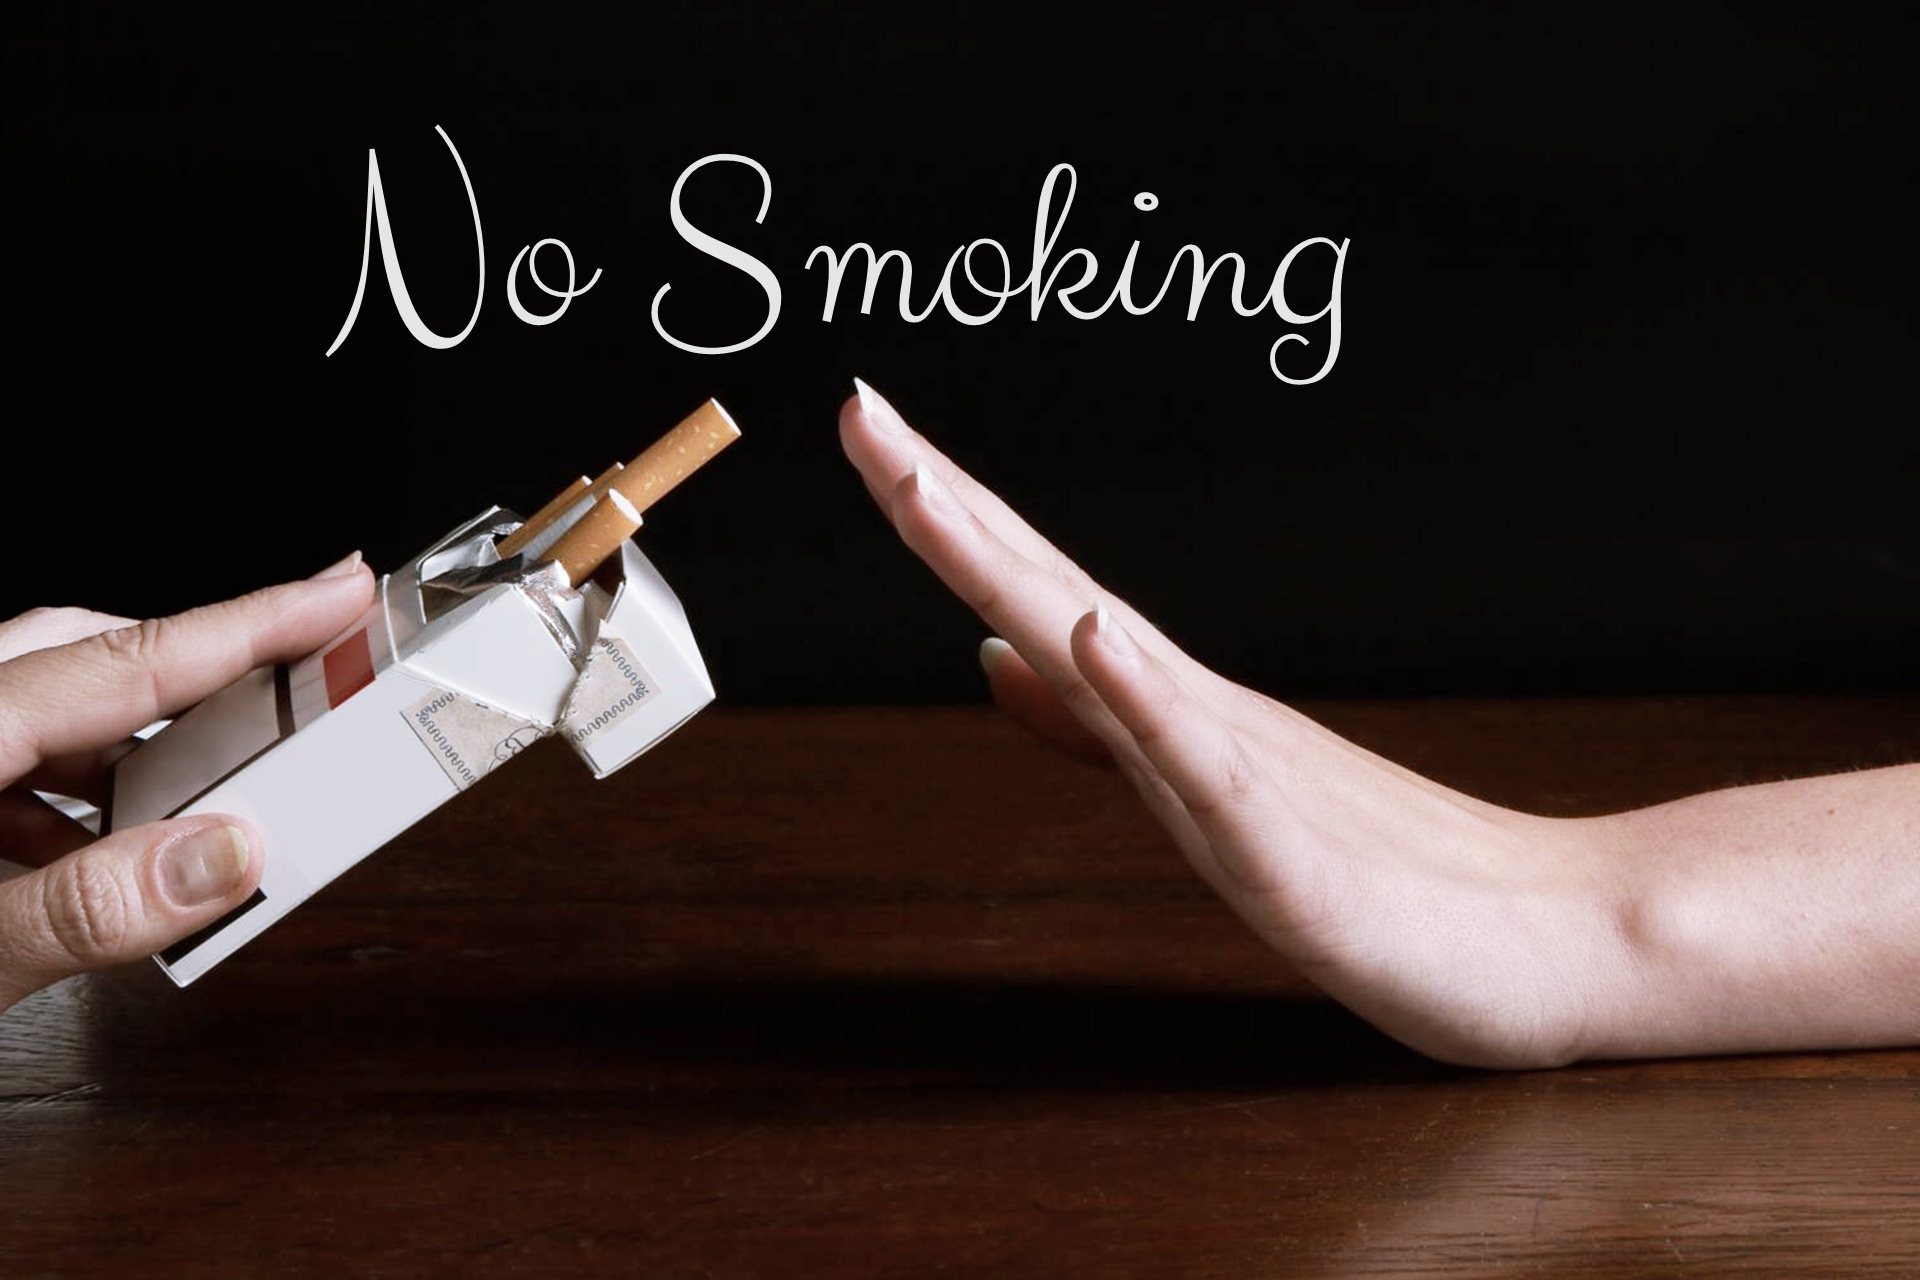 Ντίσελντορφ: Γενική απαγόρευση του καπνίσματος;